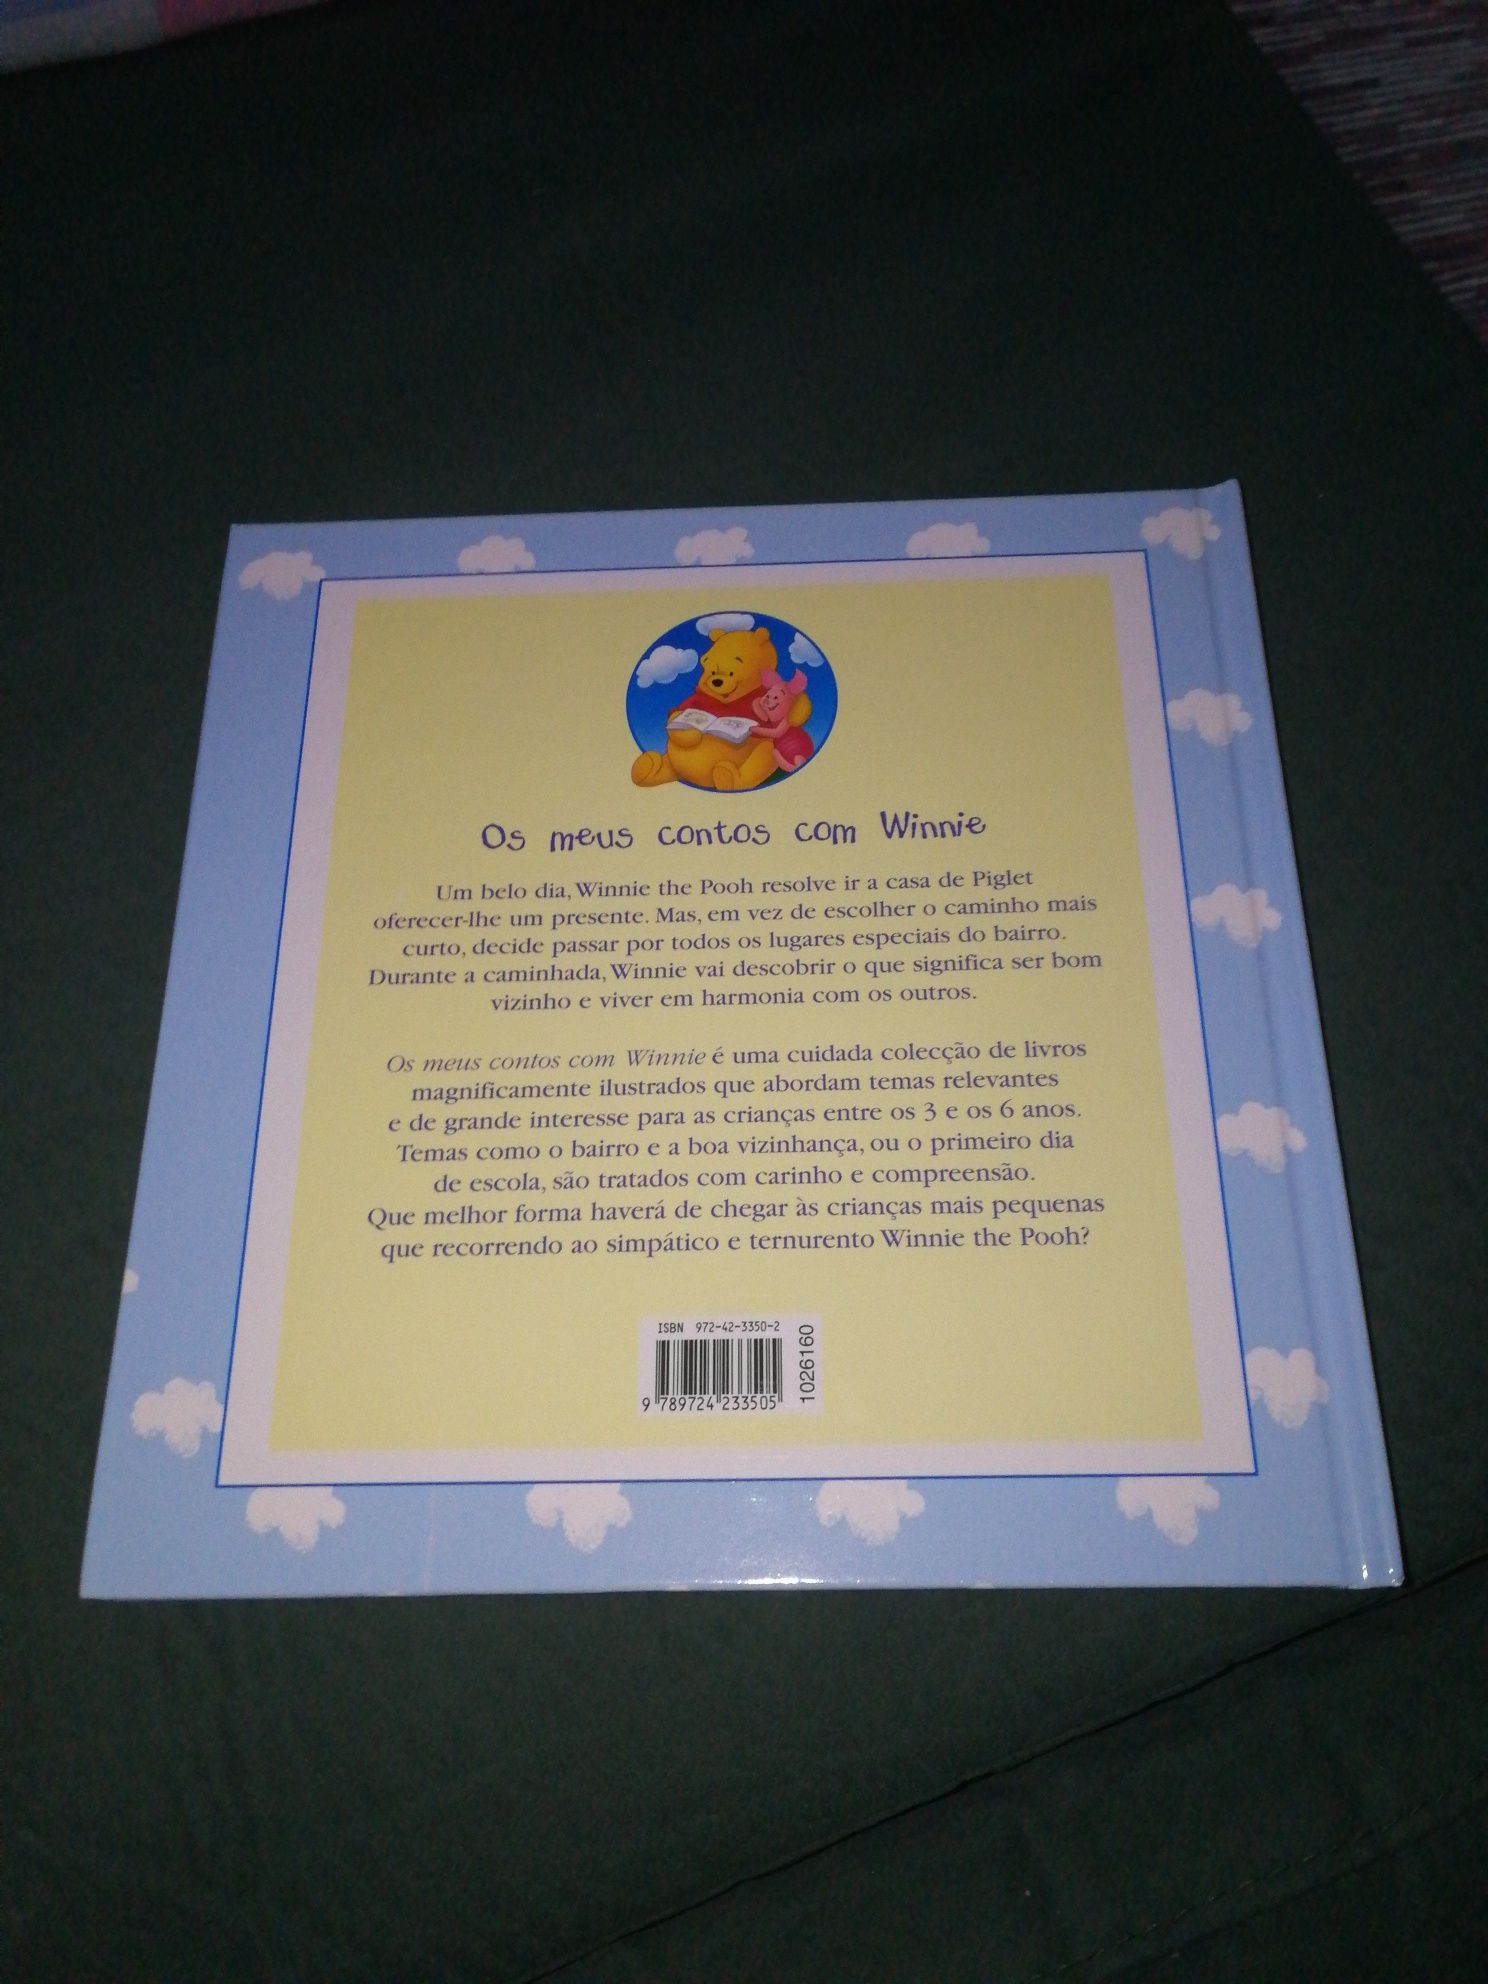 Livro "O bairro de Winnie the Pooh"